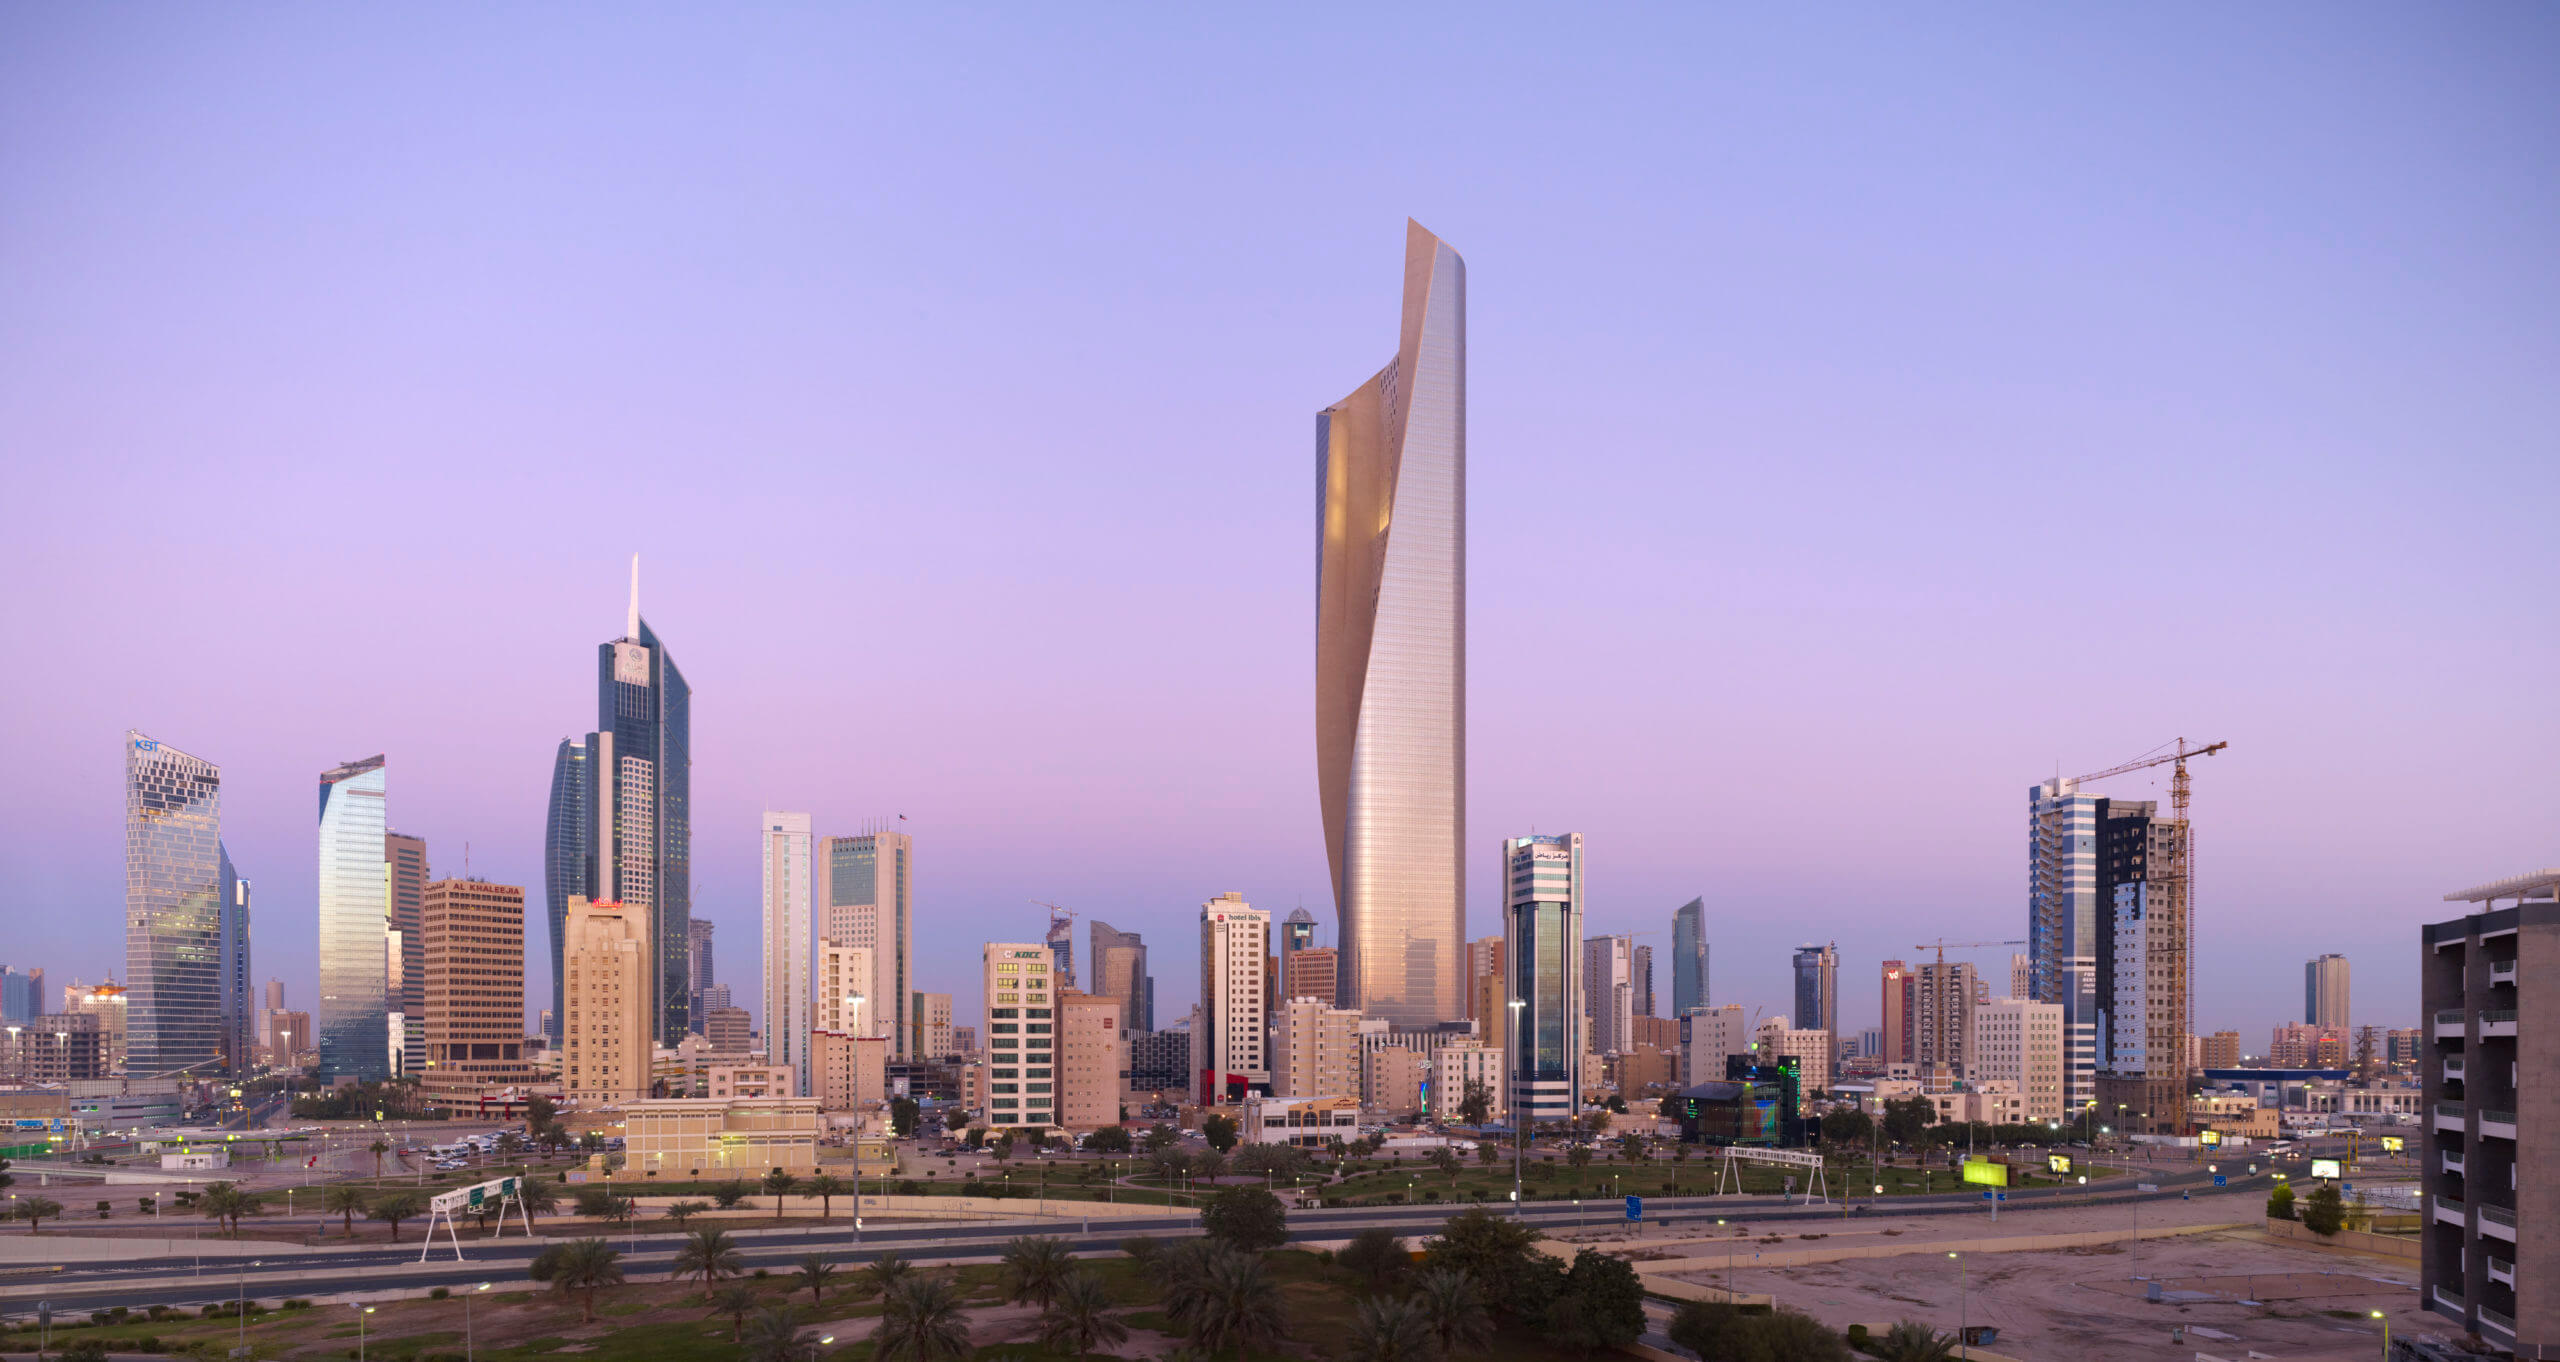 Kuwait's al hamra tower